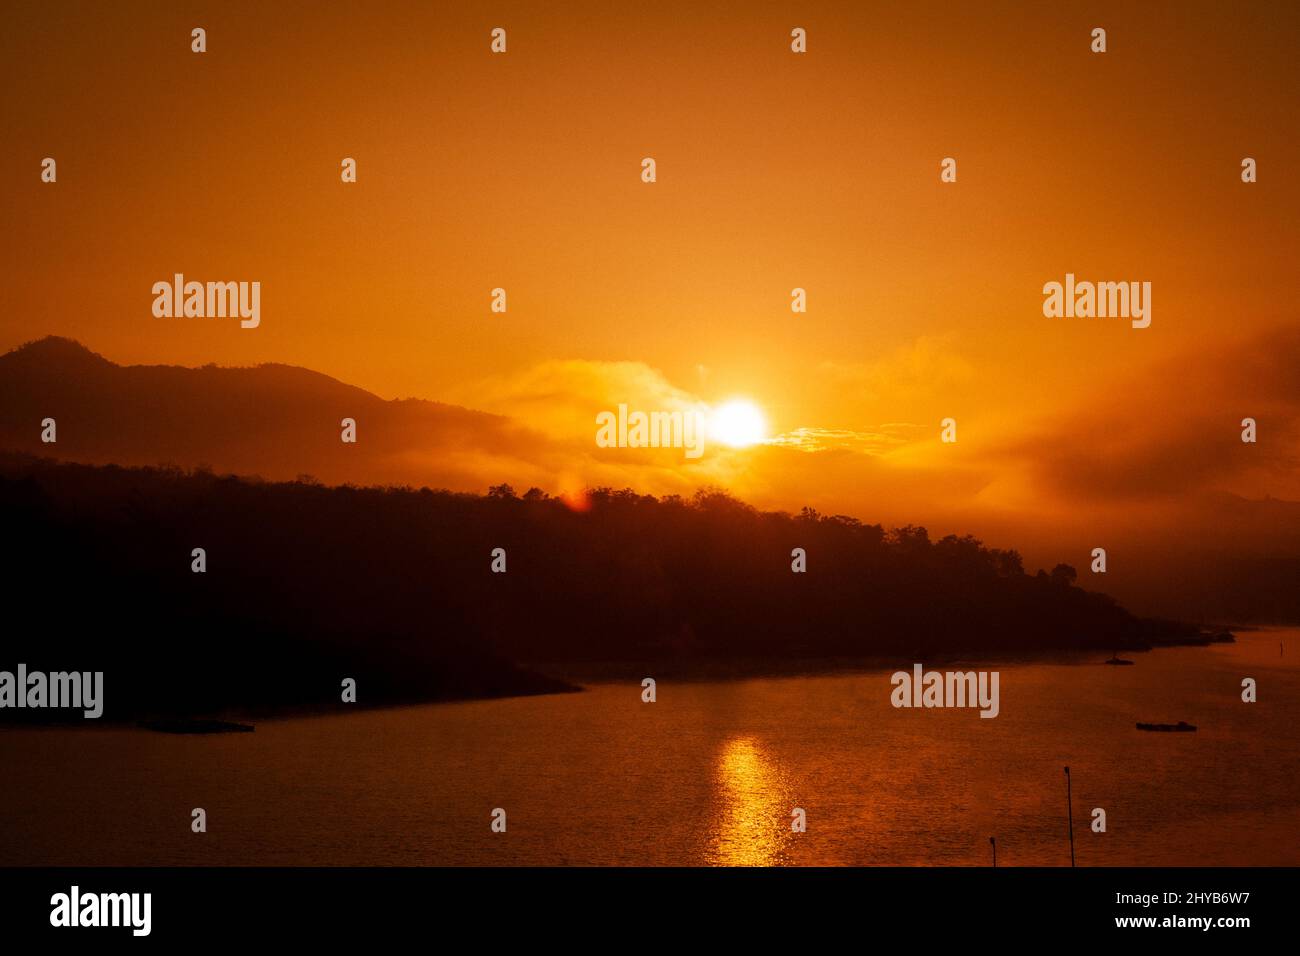 Schöner Sonnenaufgang über dem See mit warmem Himmel und funkelnden Reflexen auf der Wasseroberfläche. Stockfoto